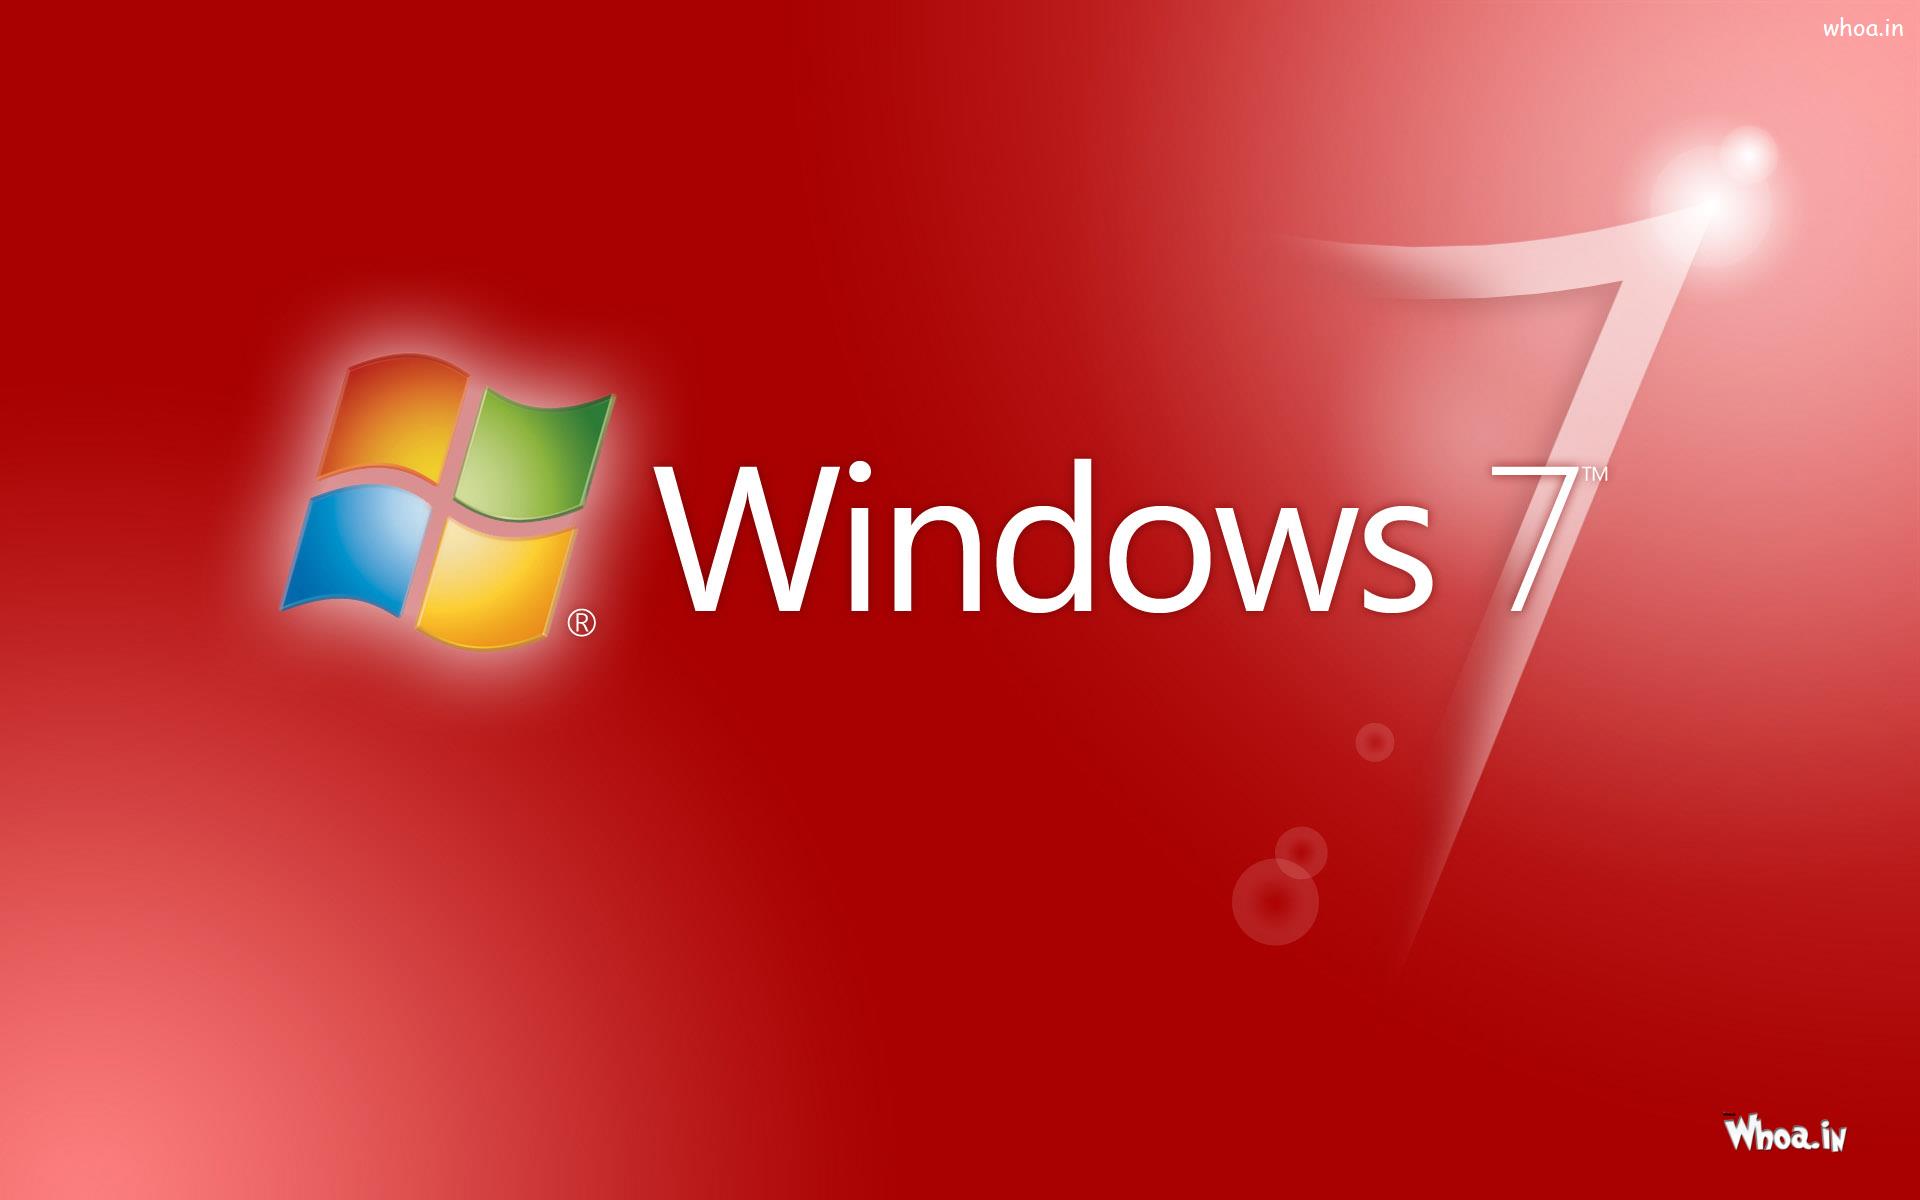 Với sự kết hợp tinh tế giữa màu đỏ và xanh, hình nền Windows 7 này sẽ khiến màn hình của bạn trở nên sống động hơn bao giờ hết. Hãy xem hình ảnh để thấy được sự ấn tượng của nó nhé!